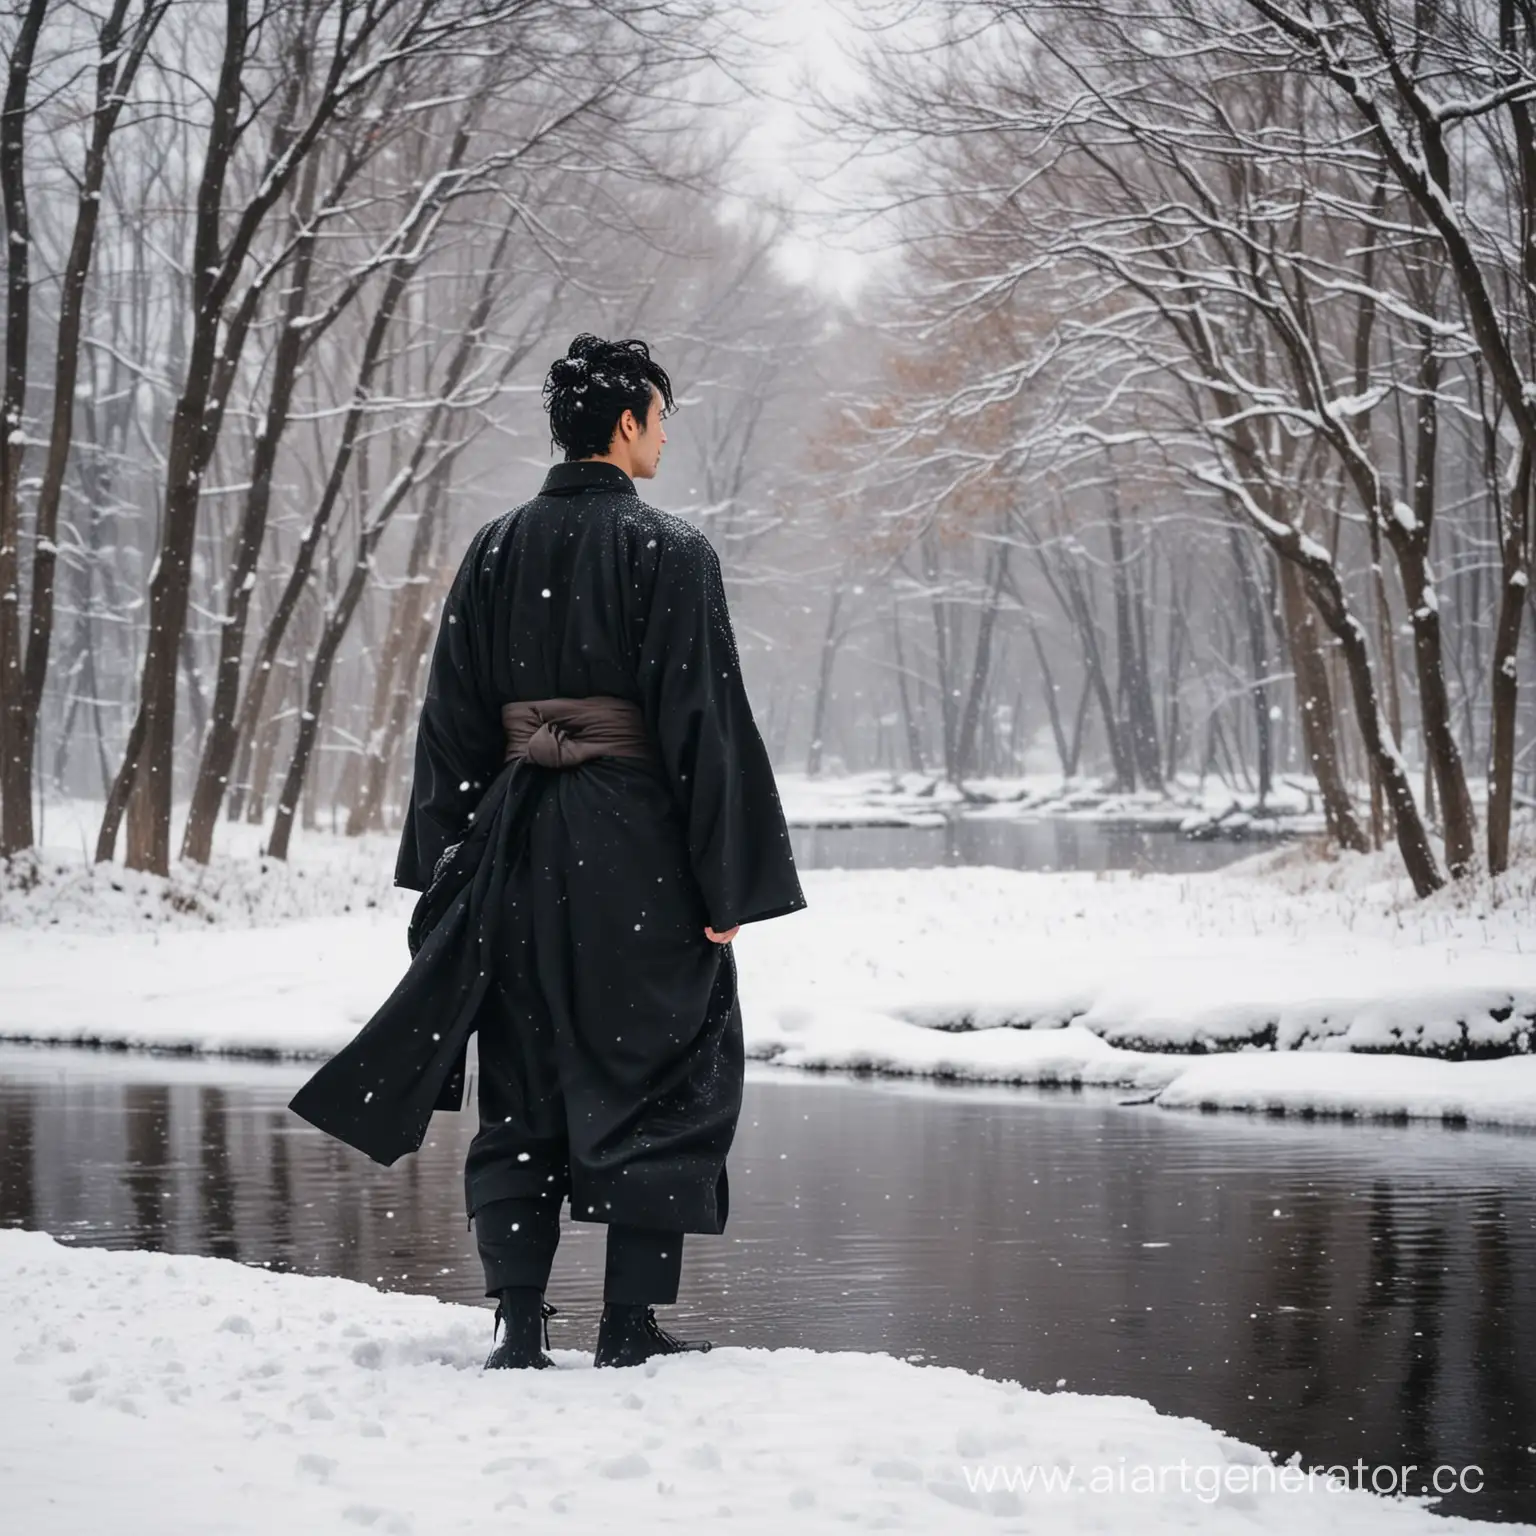 Парень шёл по снегу, он был одет очень легко для морозов. Низ чёрного хакамы был мокрый от снега, уваги колыхалось на ветру, чёрные кудри падали на его плечи